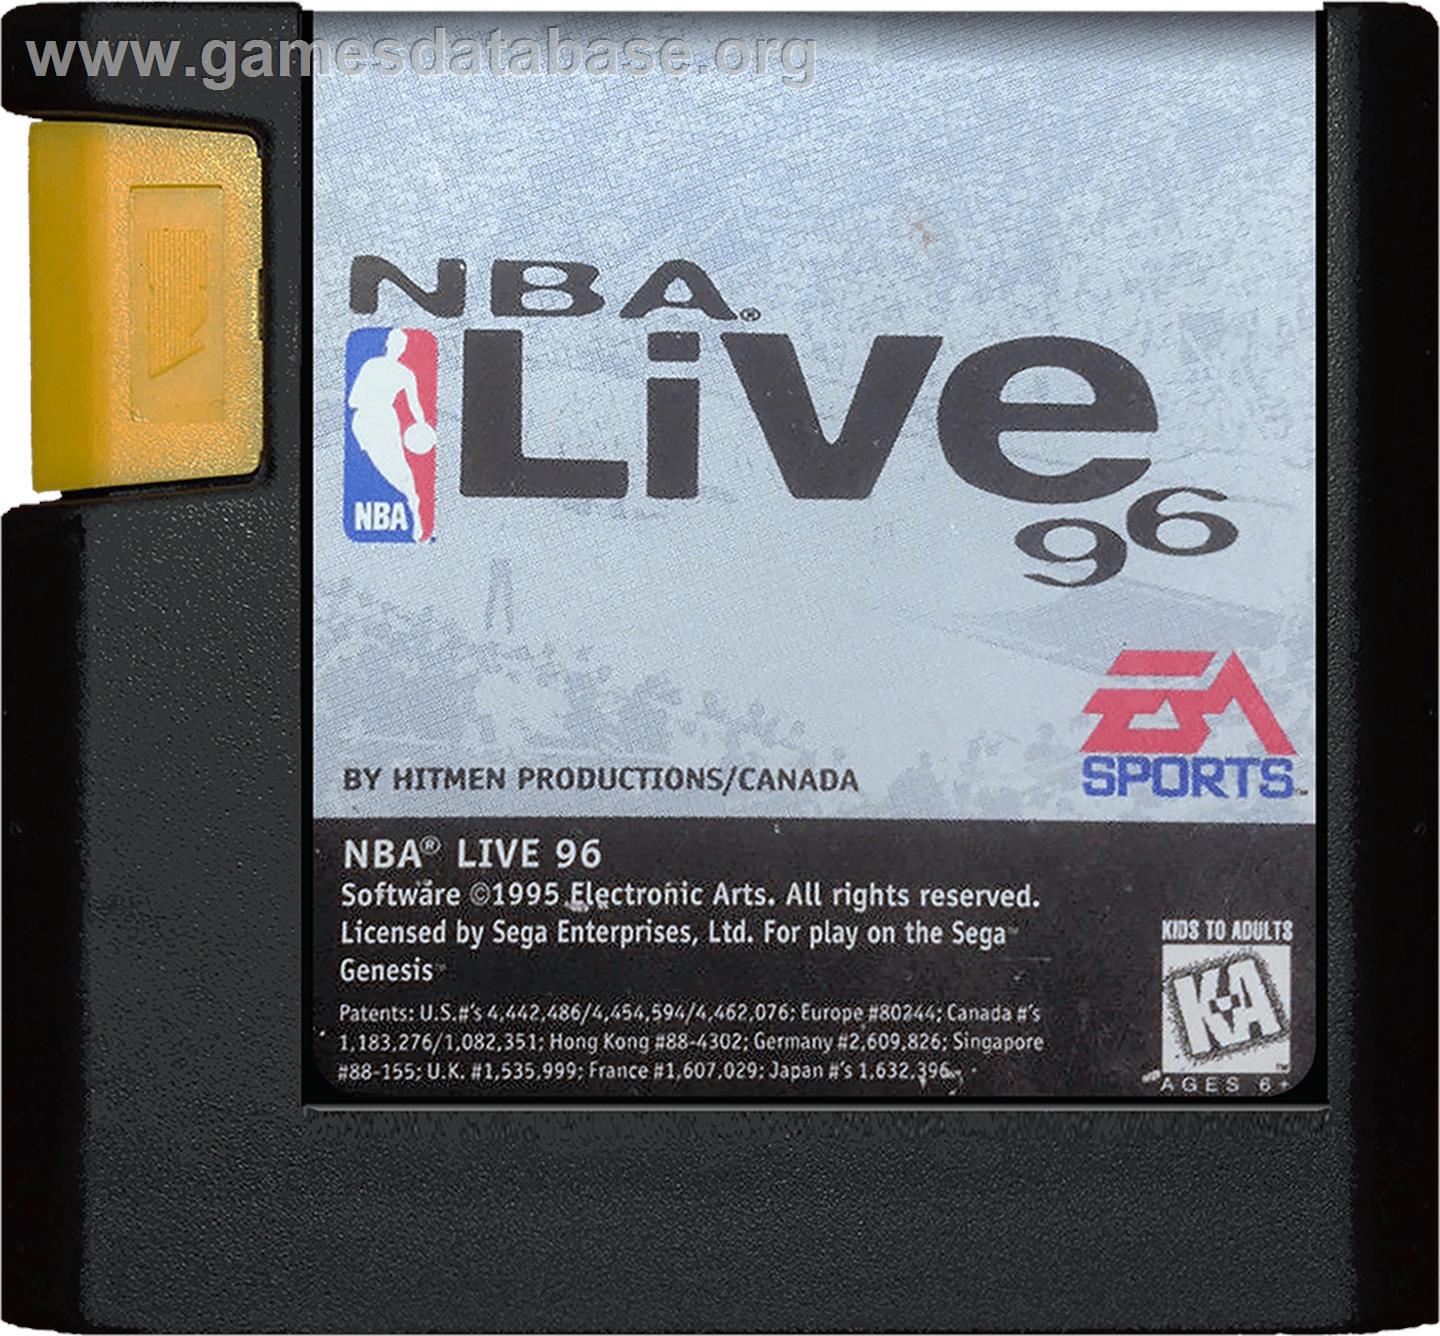 NBA Live '96 - Sega Genesis - Artwork - Cartridge